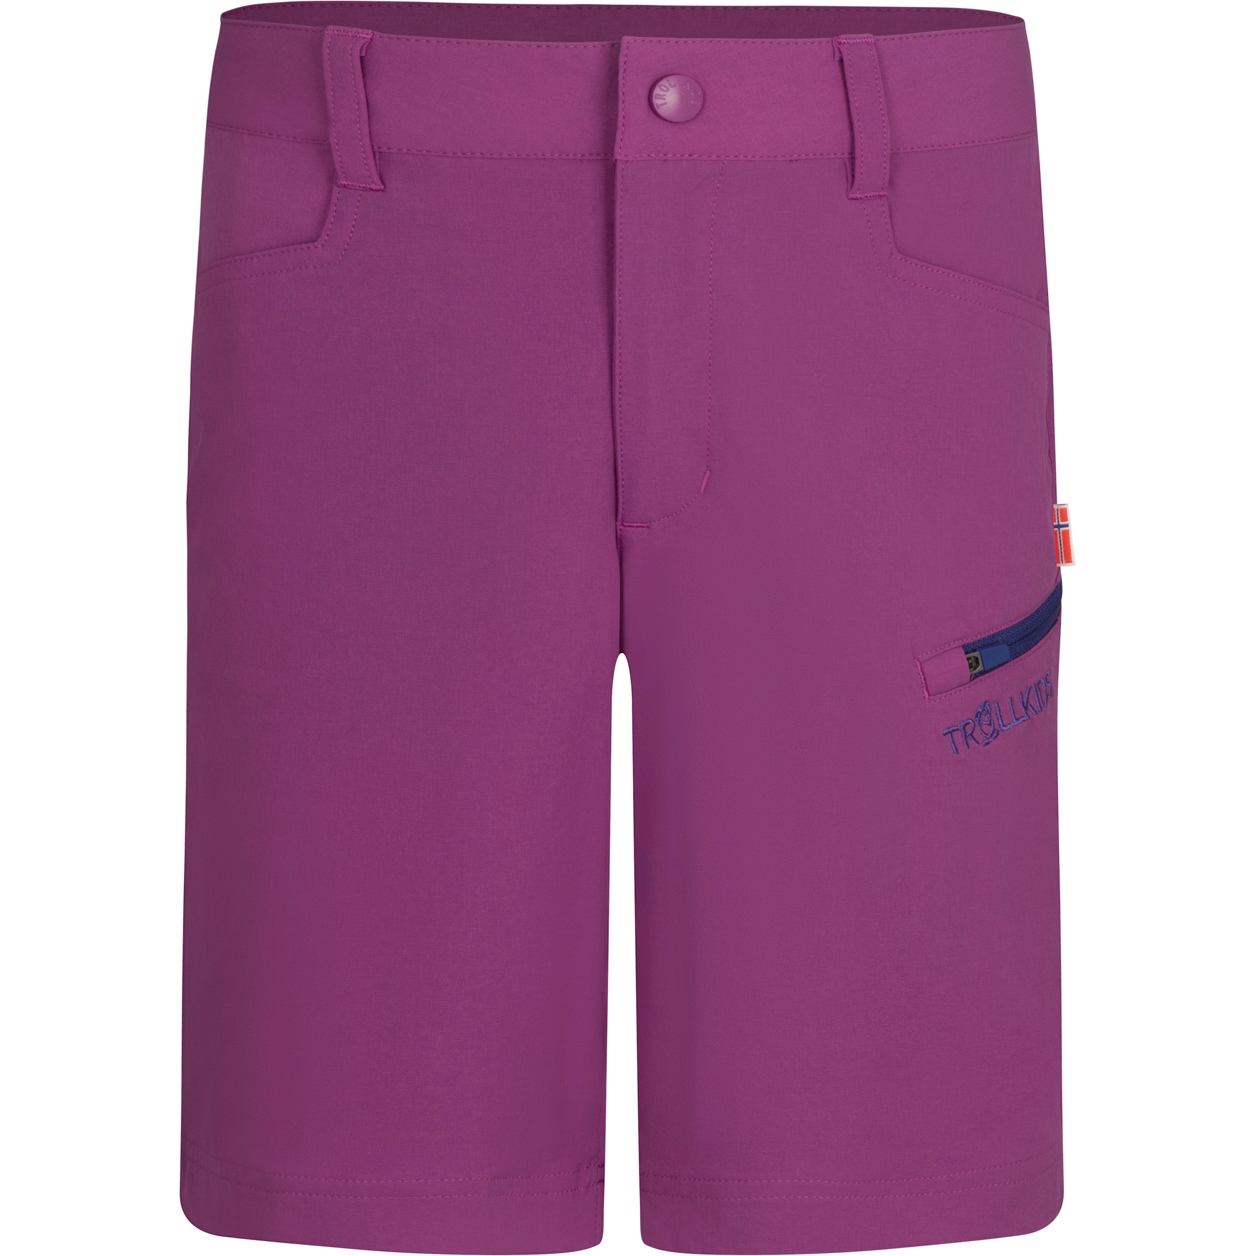 Produktbild von Trollkids Haugesund Shorts Kinder - mallow pink/violet blue